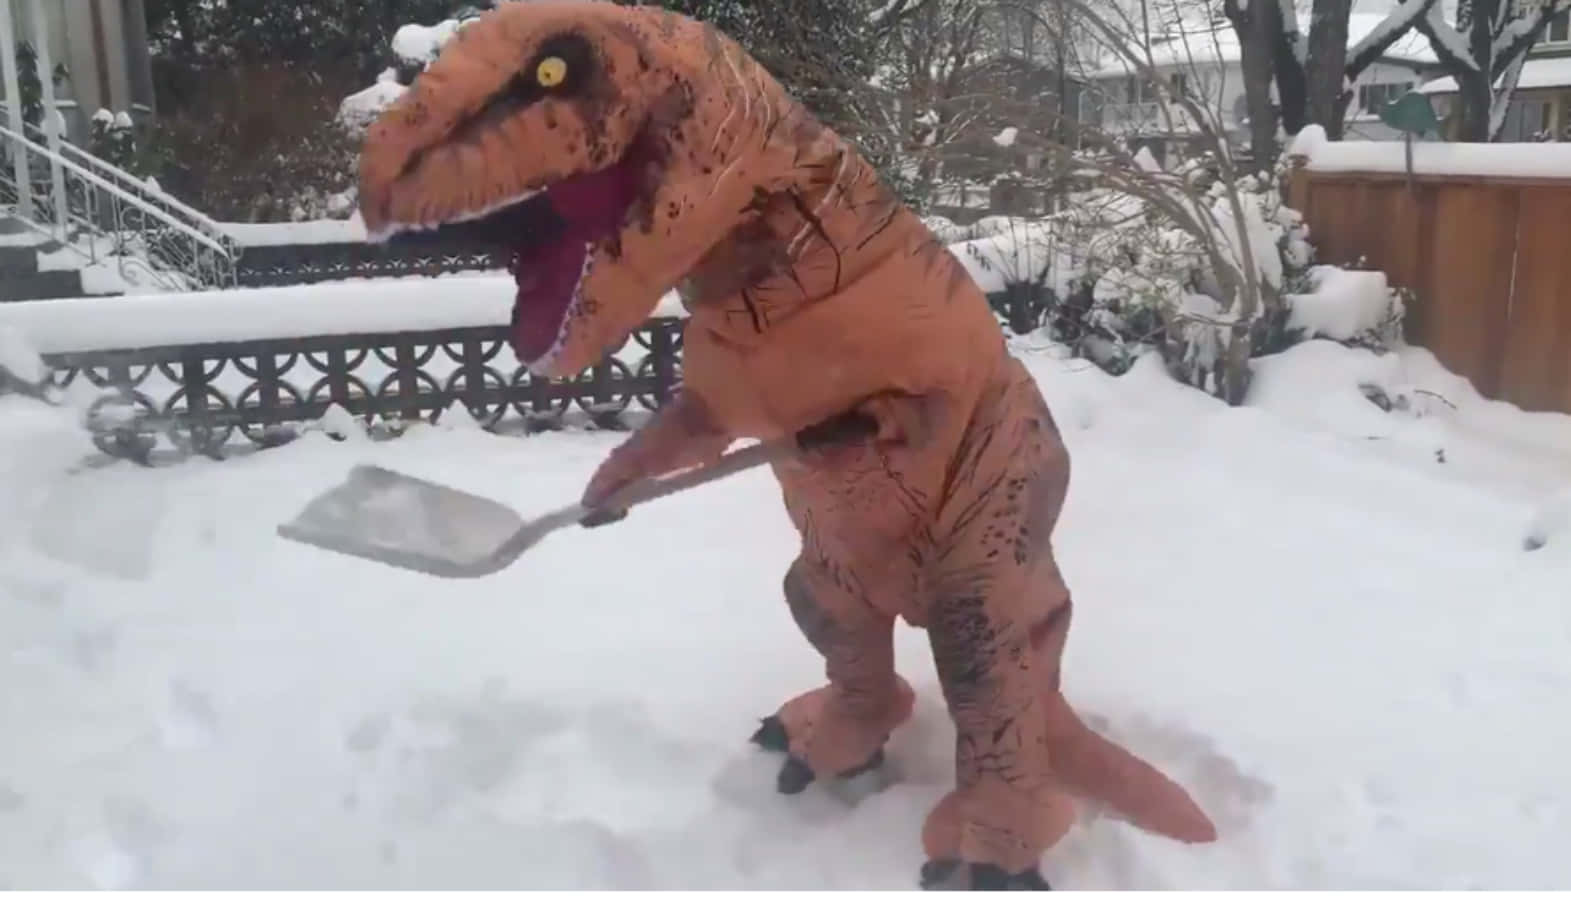 Witzigesbild Eines Schneet-rex Im Kostüm Beim Schnee Schaufeln.